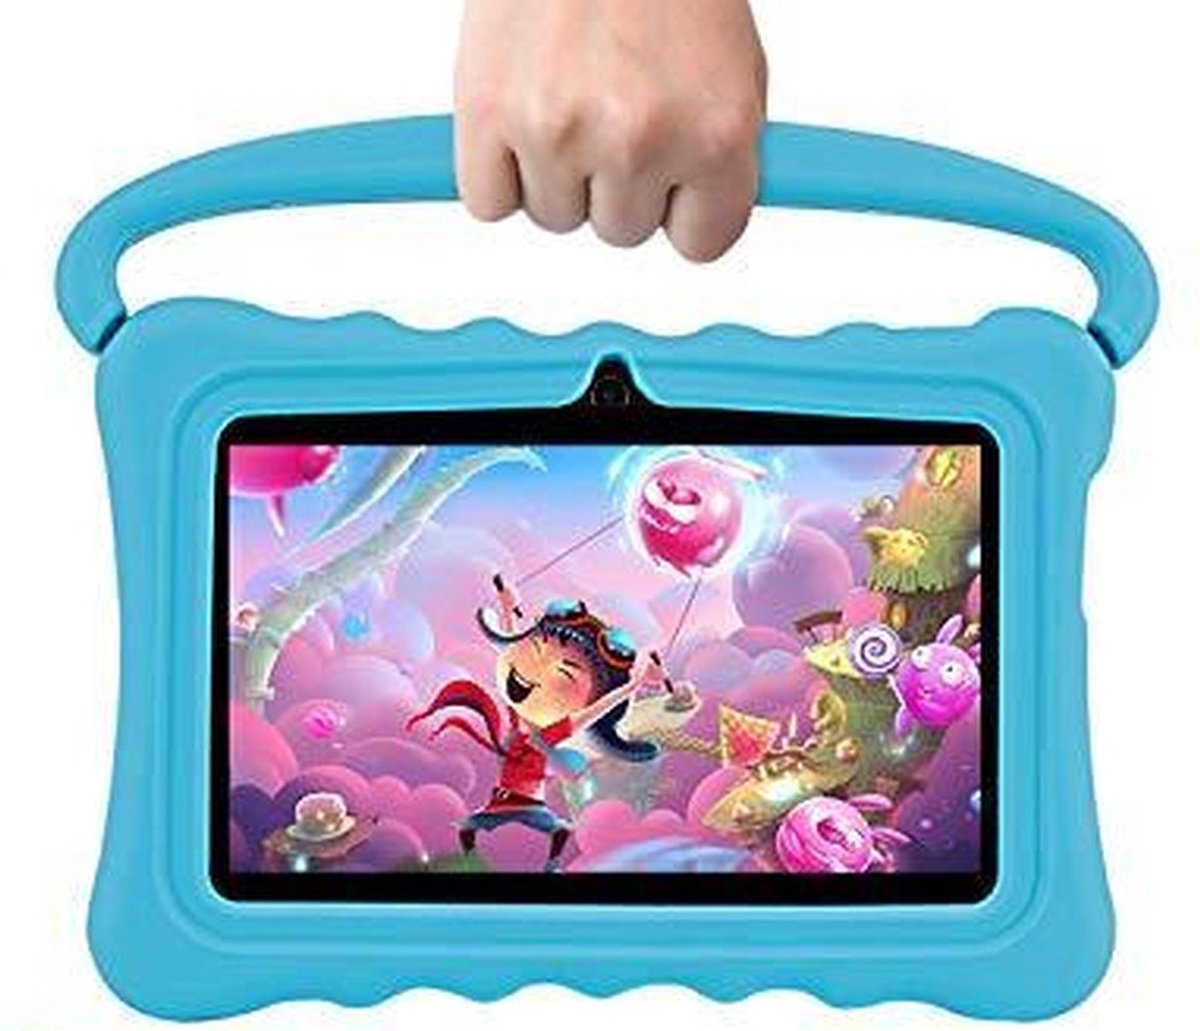 Lipa Veidoo kinder tablet Blue 7 inch - Met spellen software - Play store - Ouder bescherming - Speciaal IPS scherm met bescherming ogen - Met bumper - Veidoo